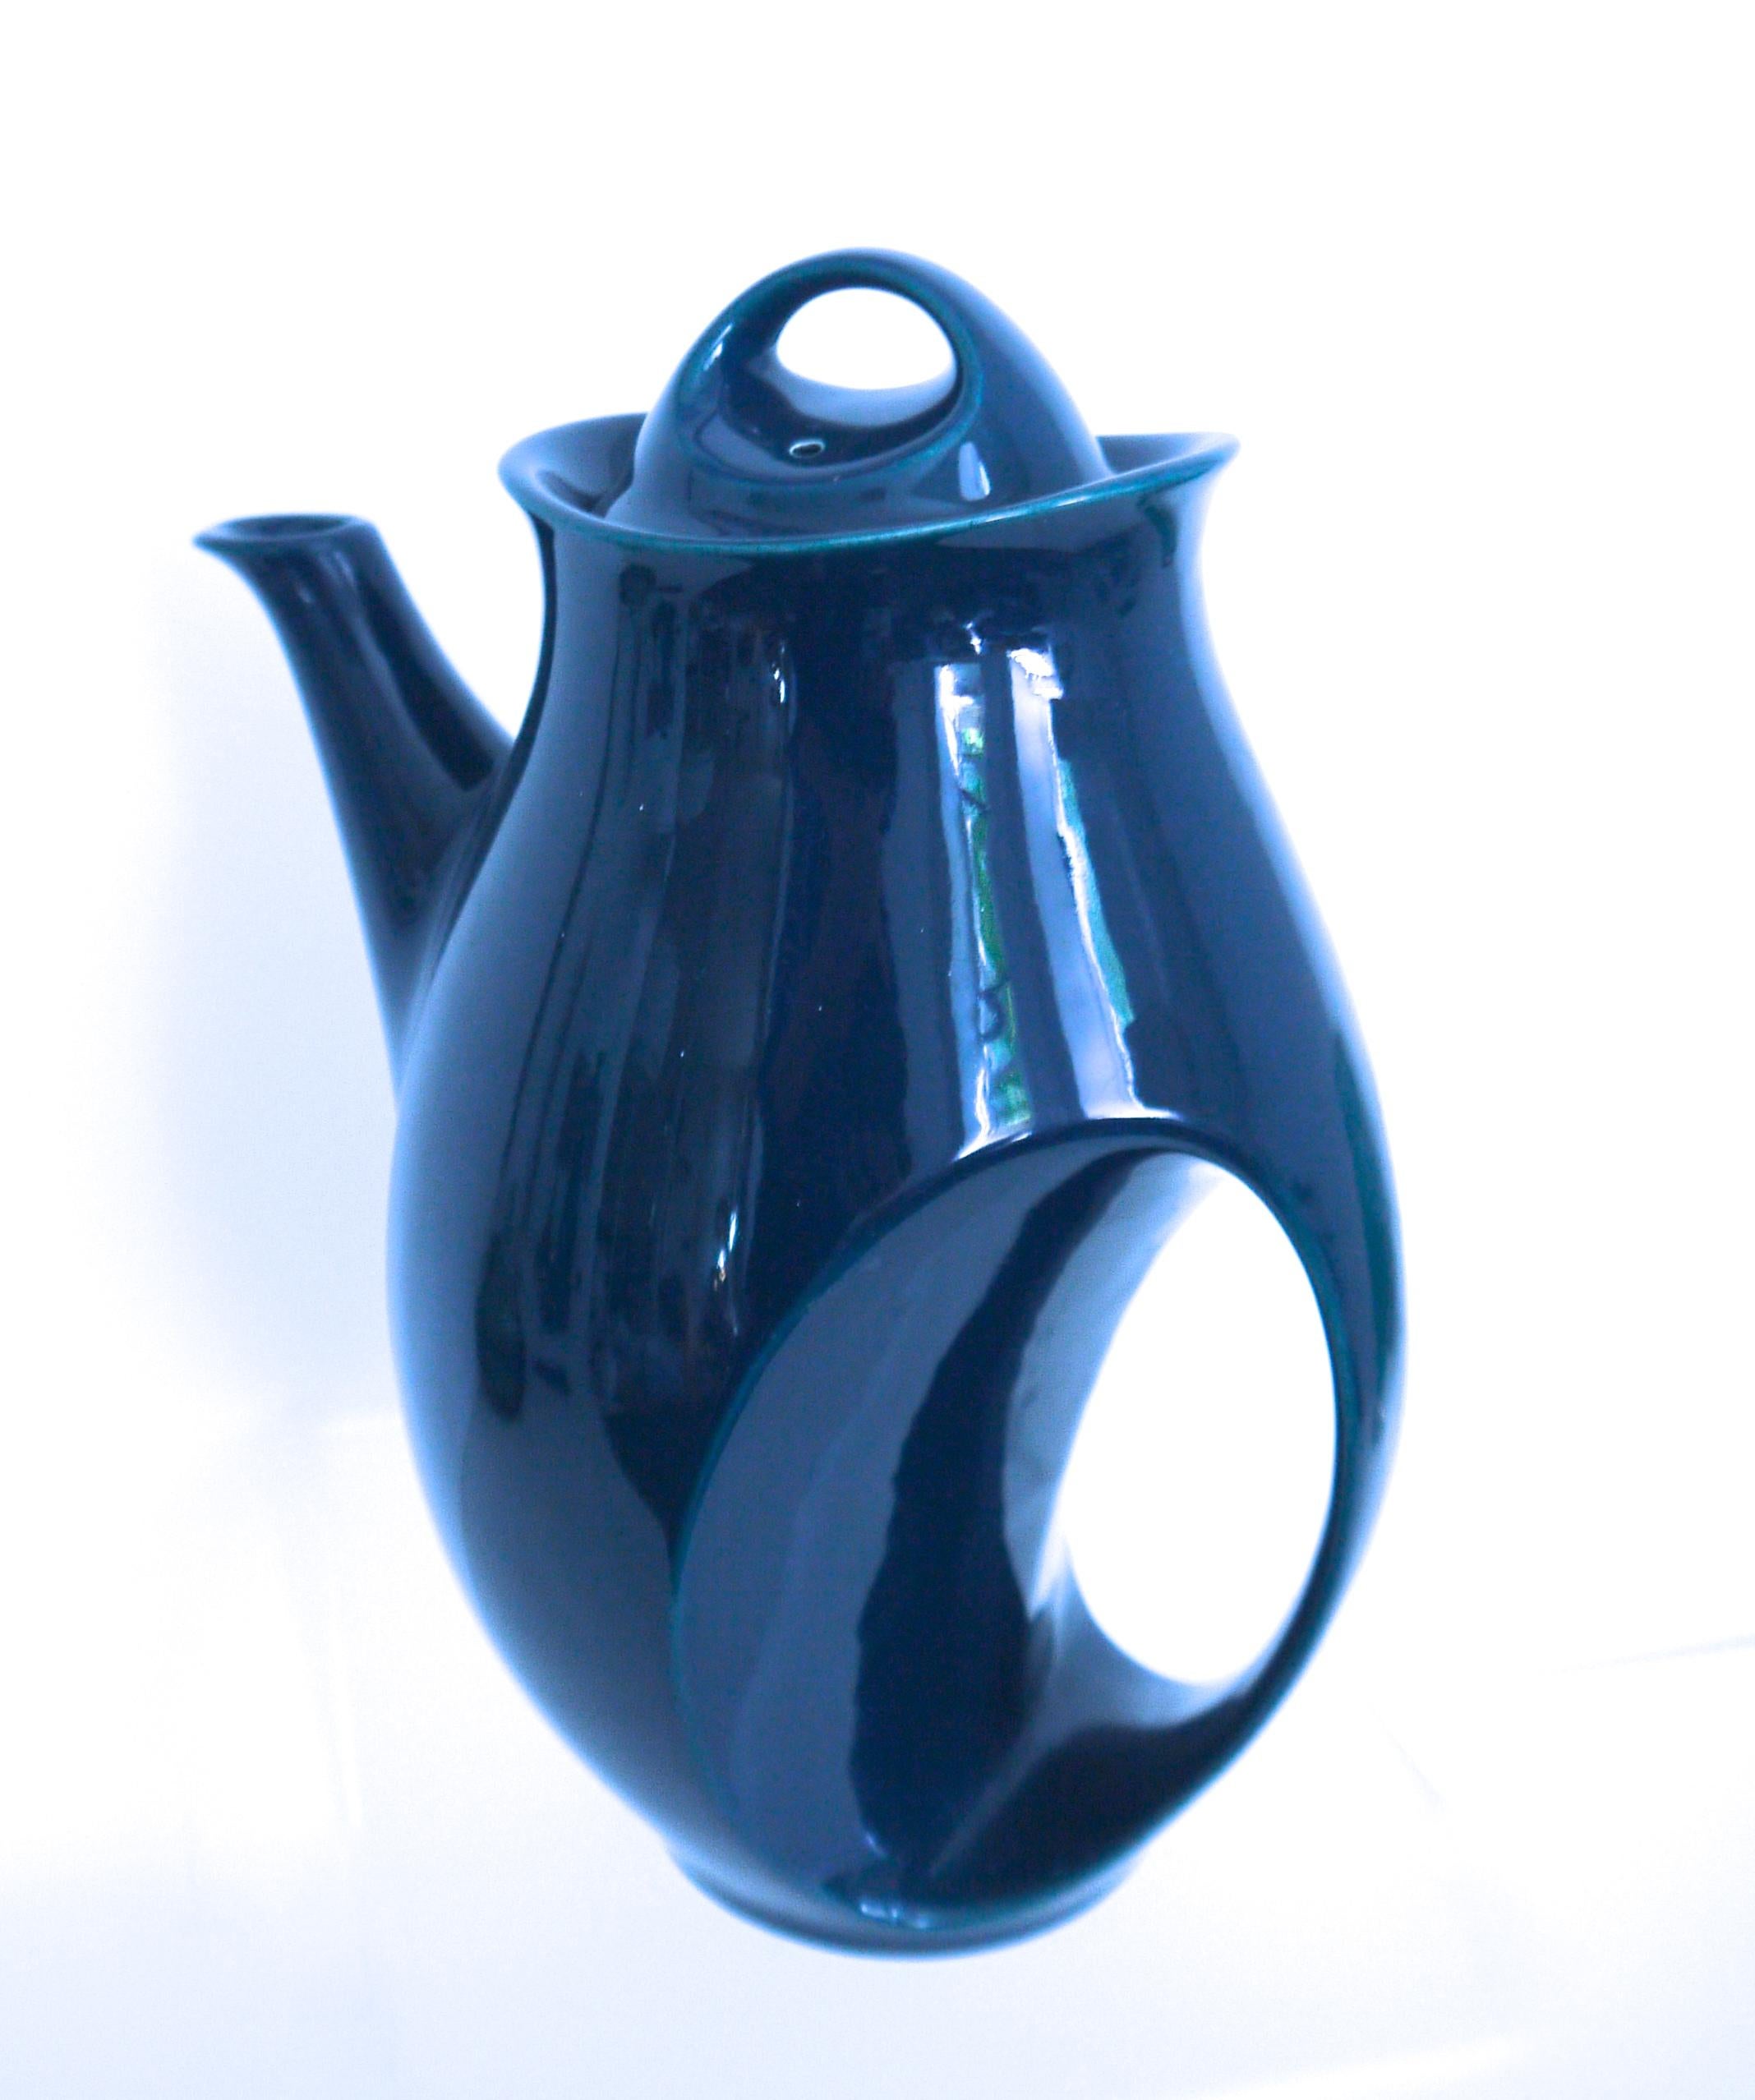 holkham pottery tea set